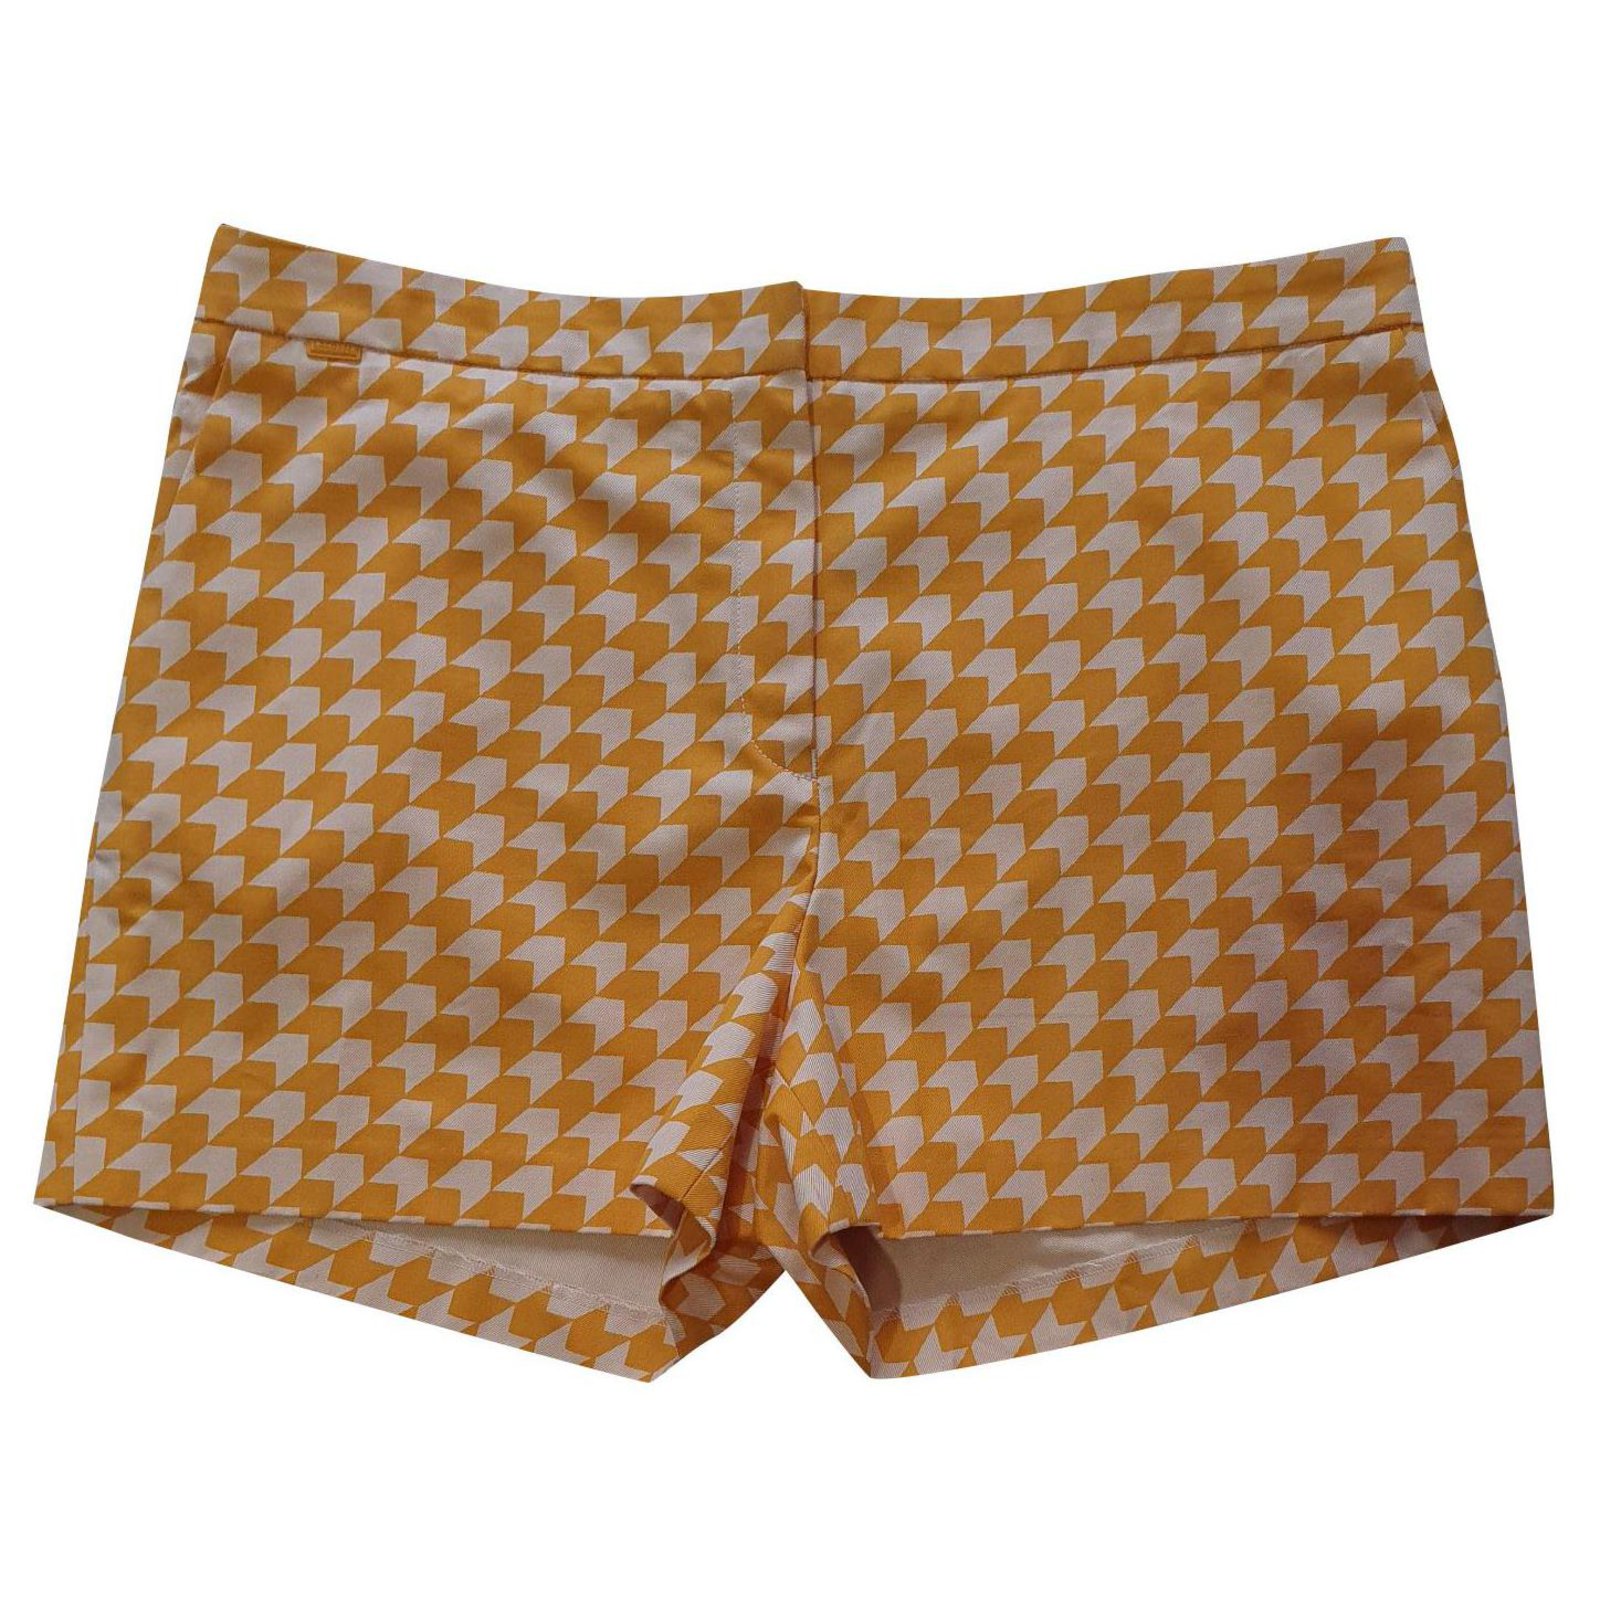 orange lacoste shorts